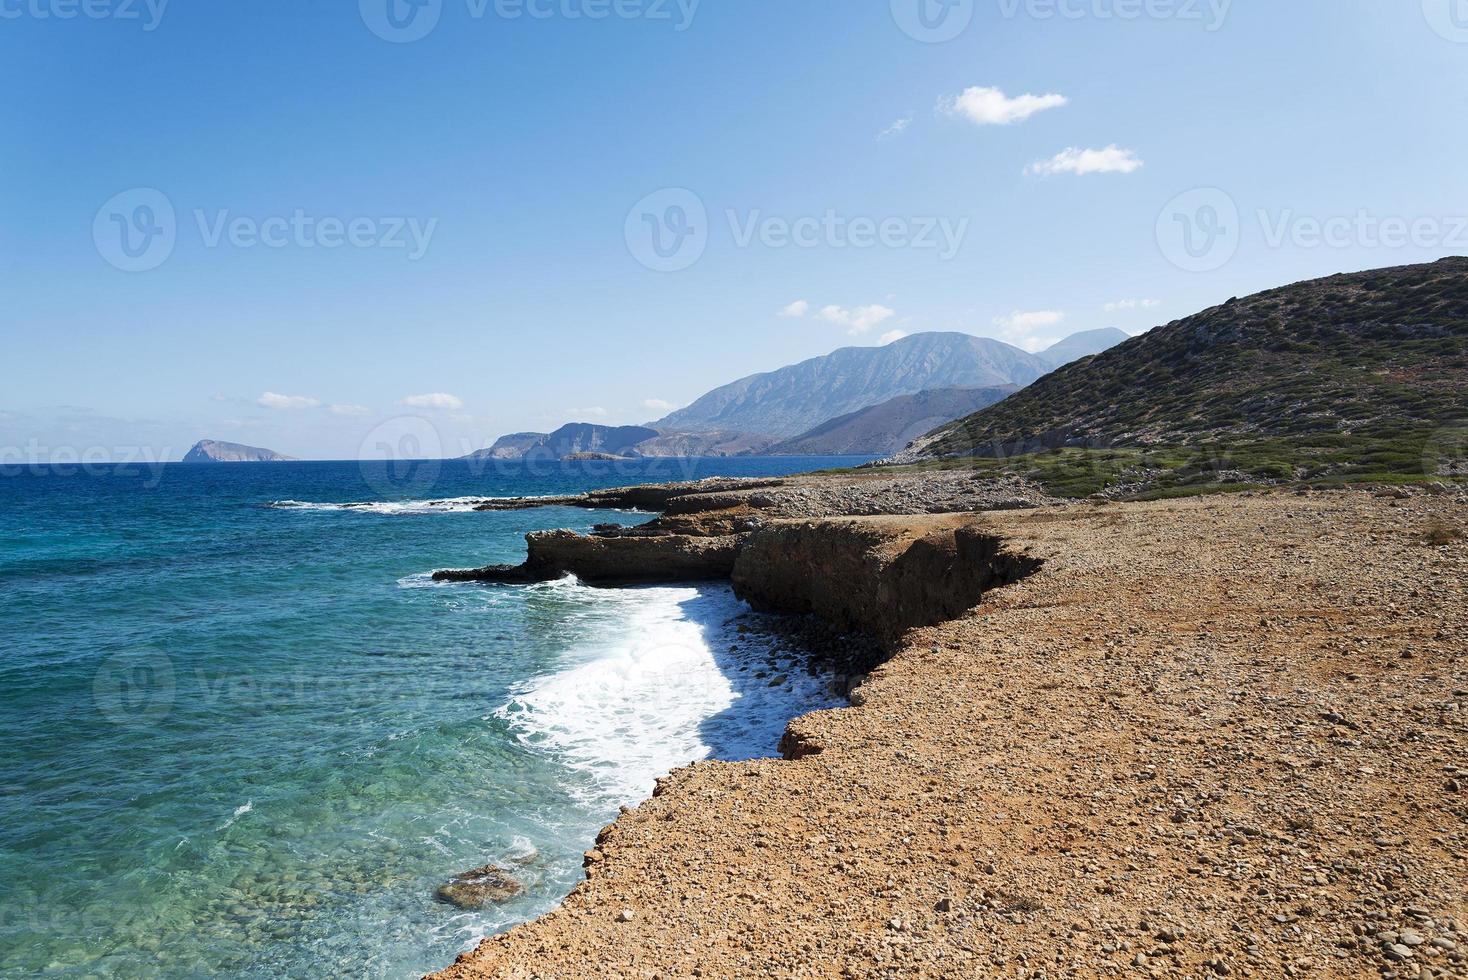 la mer et les montagnes de Crète. photo